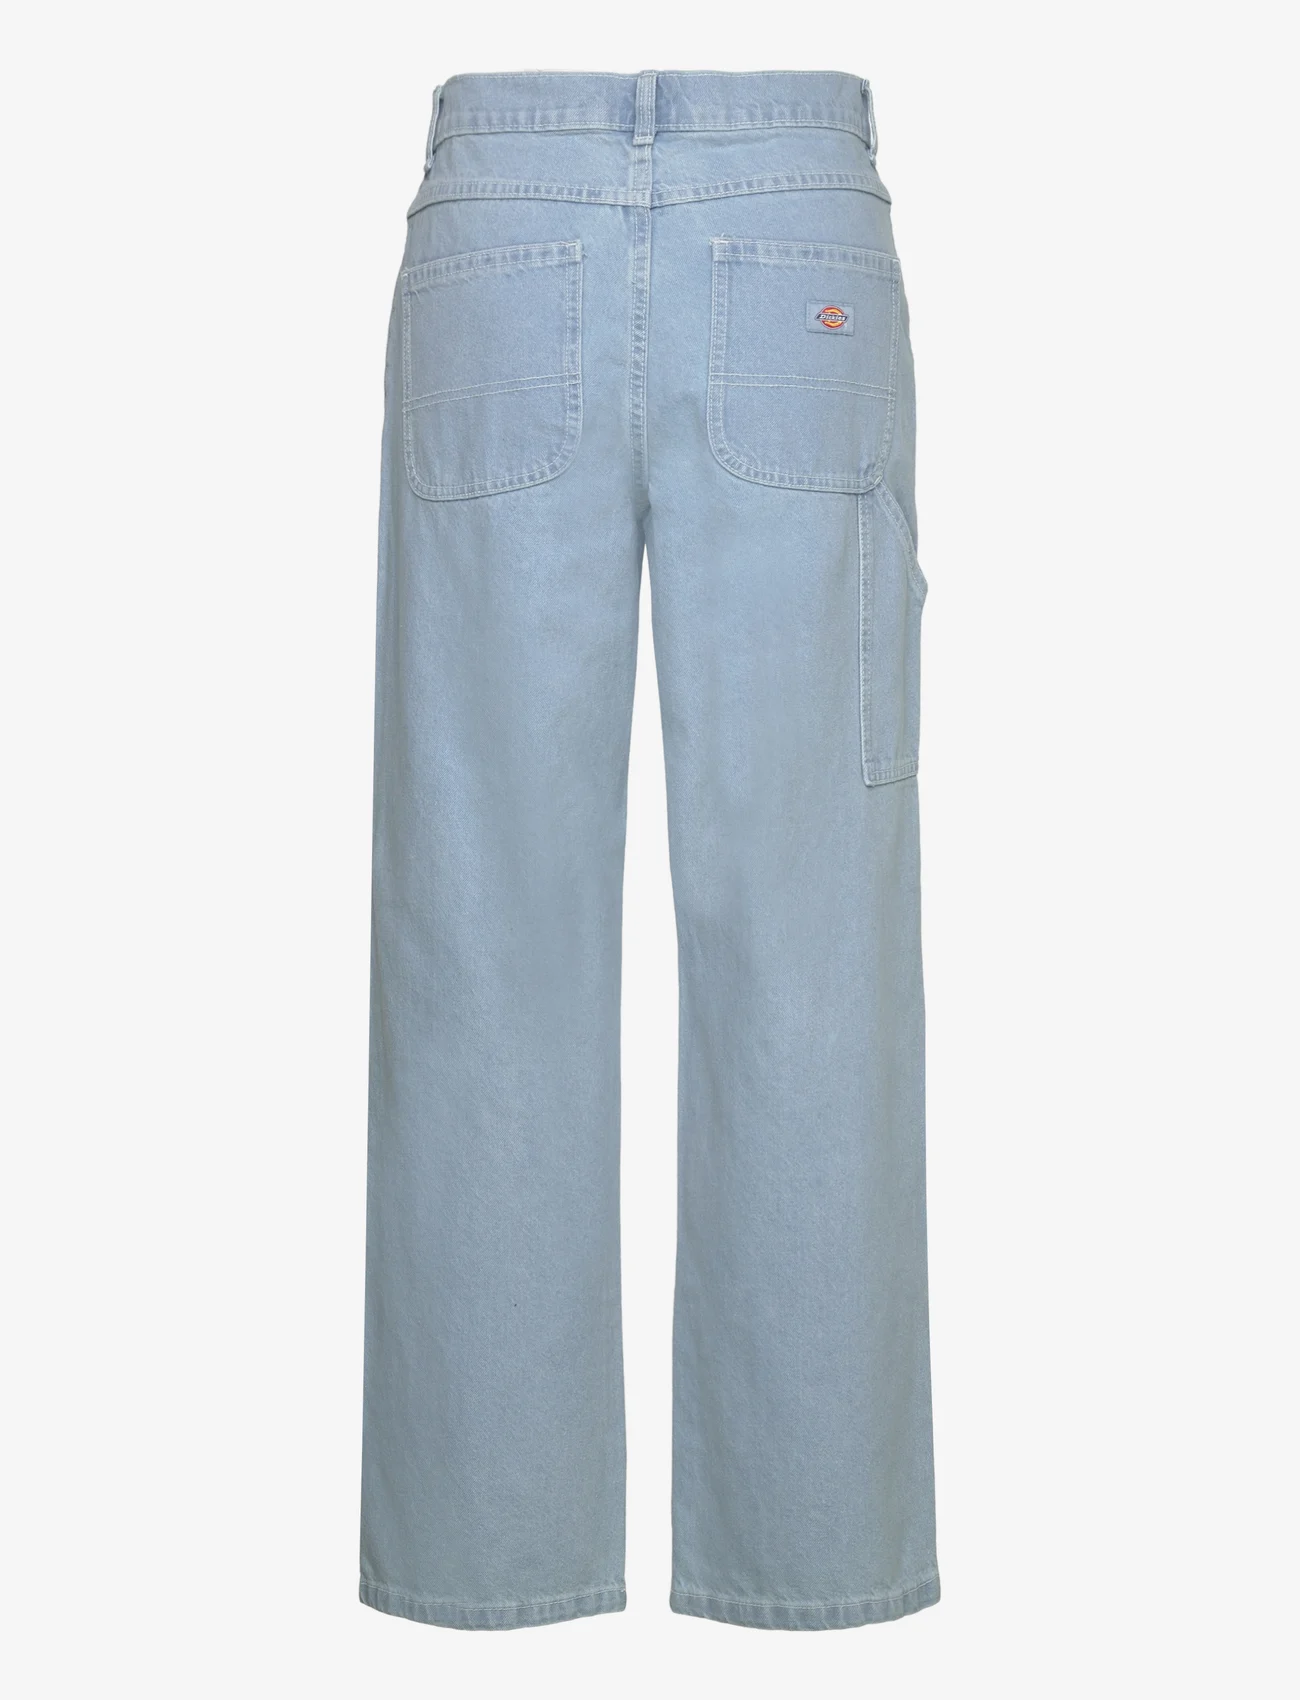 Dickies - HERNDON DENIM W - jeans met wijde pijpen - vintage aged blue - 1